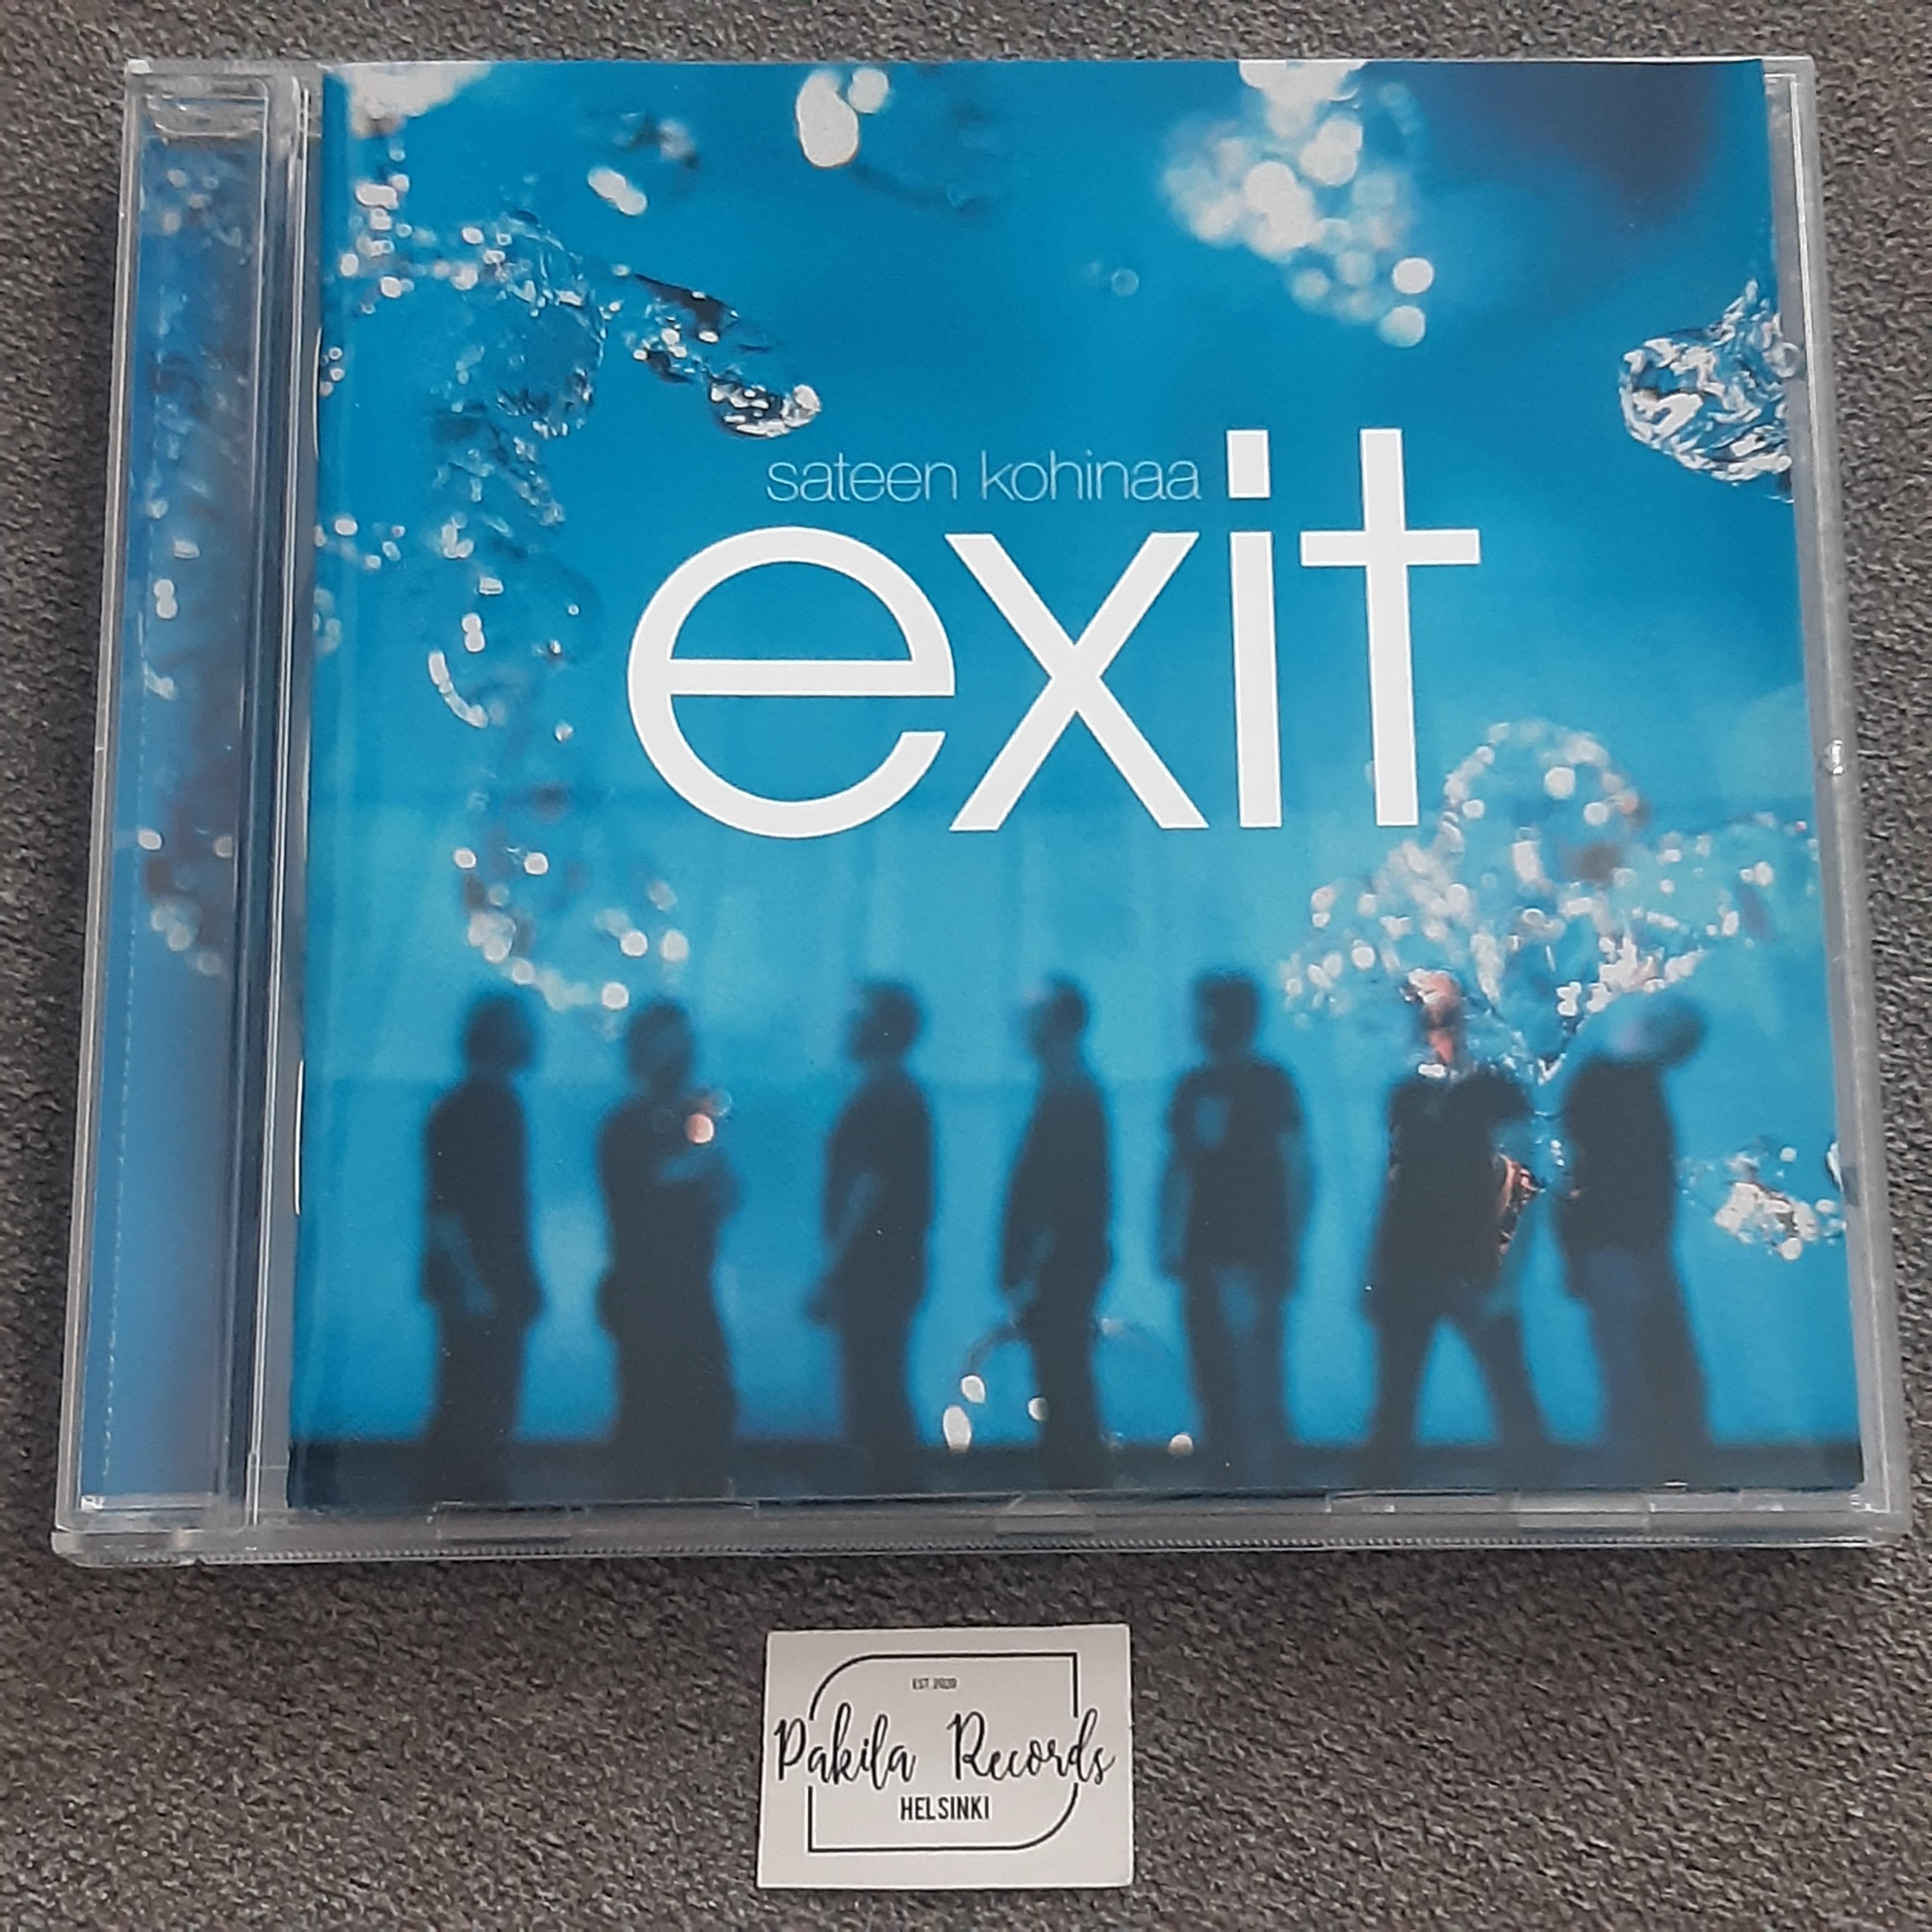 Exit - Sateen kohinaa - CD (käytetty)